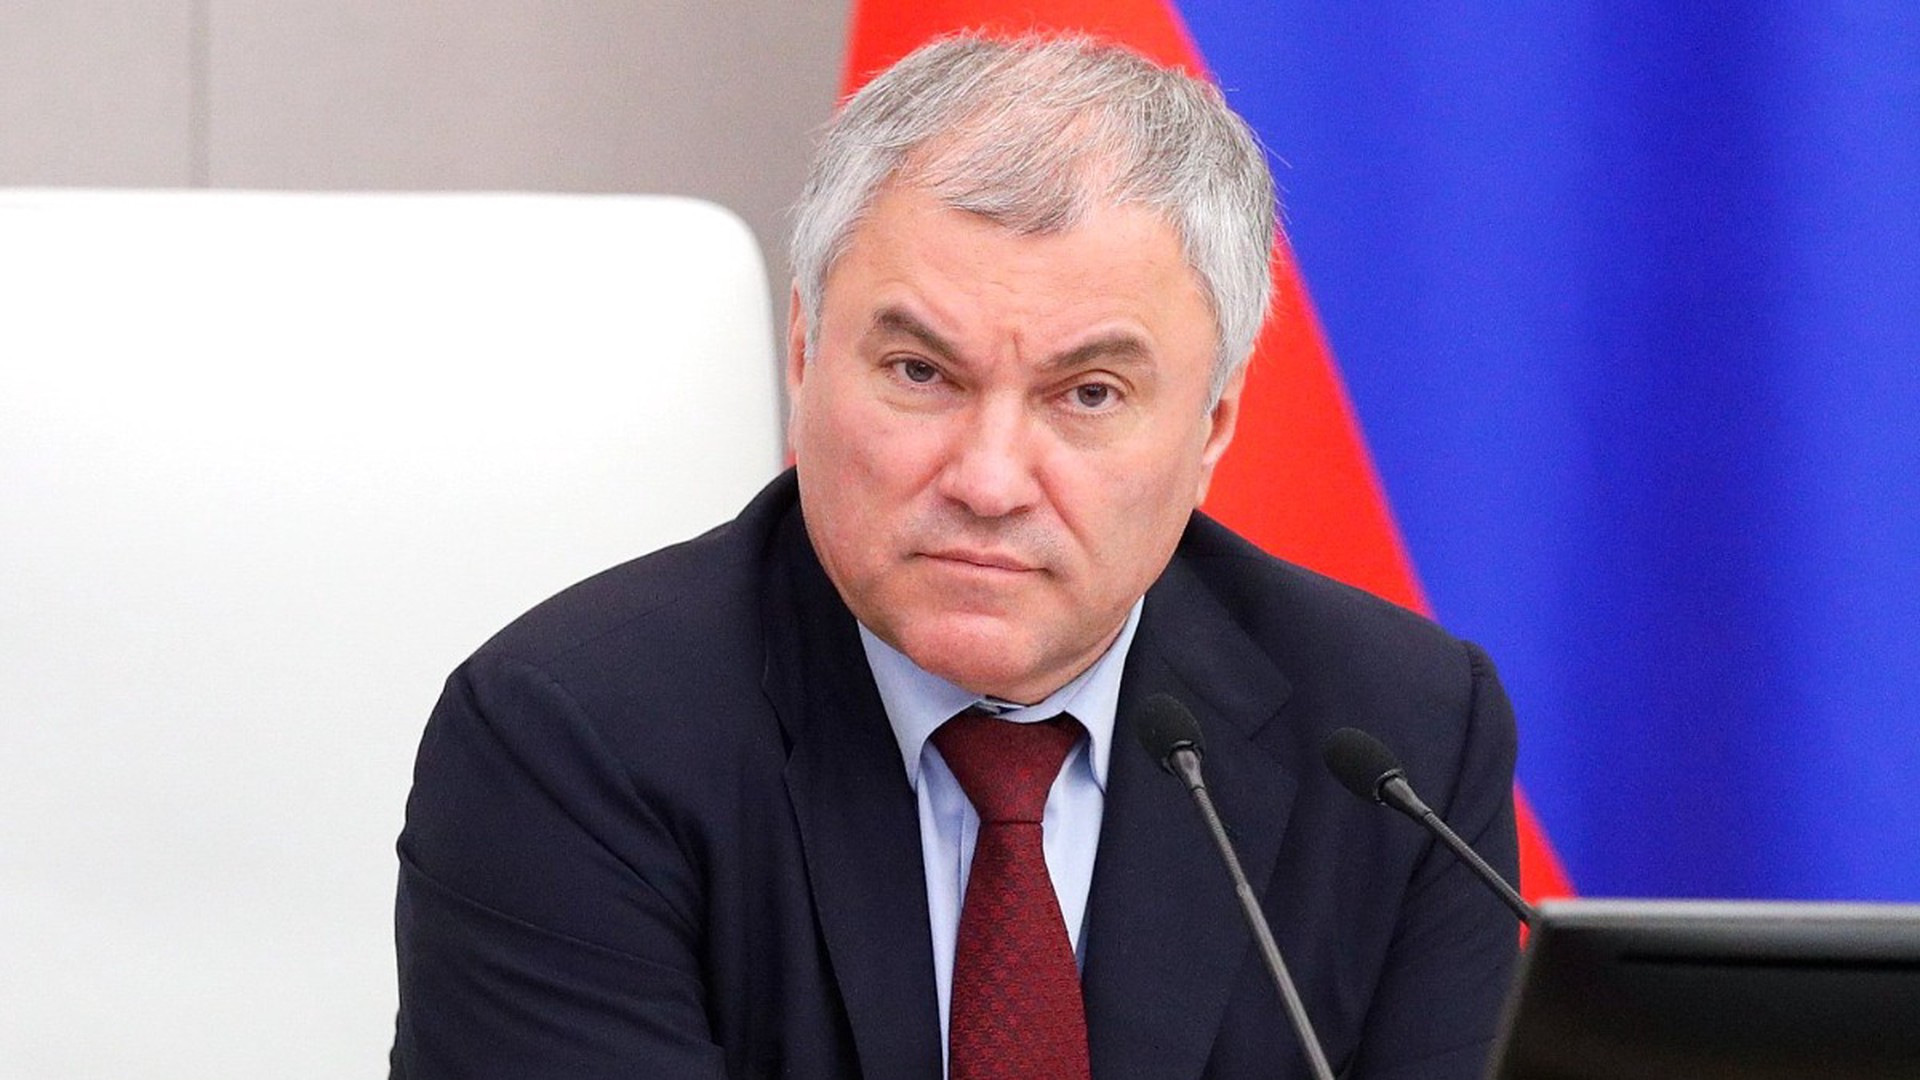 Володин предложил запретить деятельность МУС в РФ и утвердить наказание за содействие ему